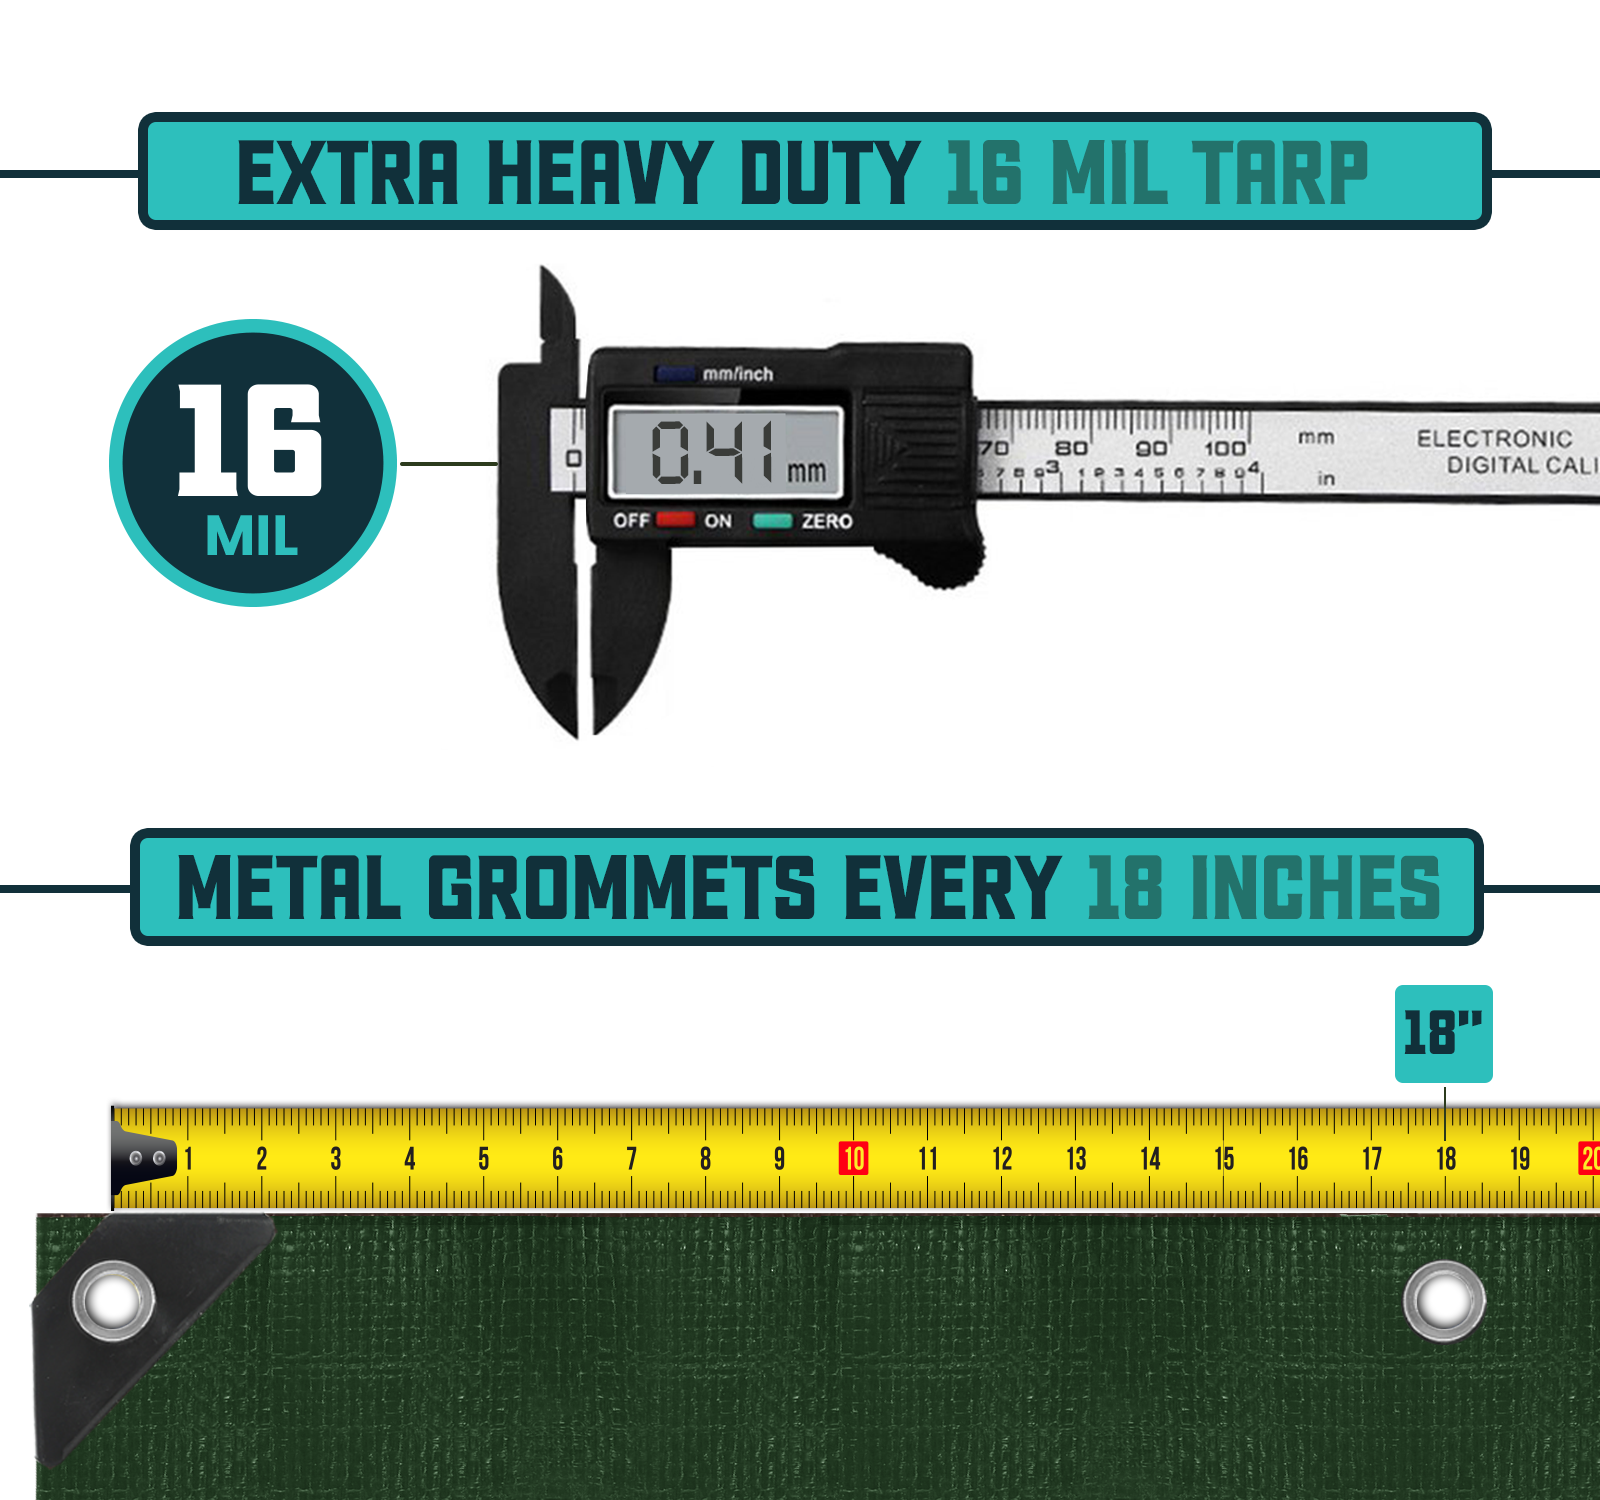 Core Tarps Extra Heavy Duty Green/Black 16 Mil Tarp. | Brix Tarps